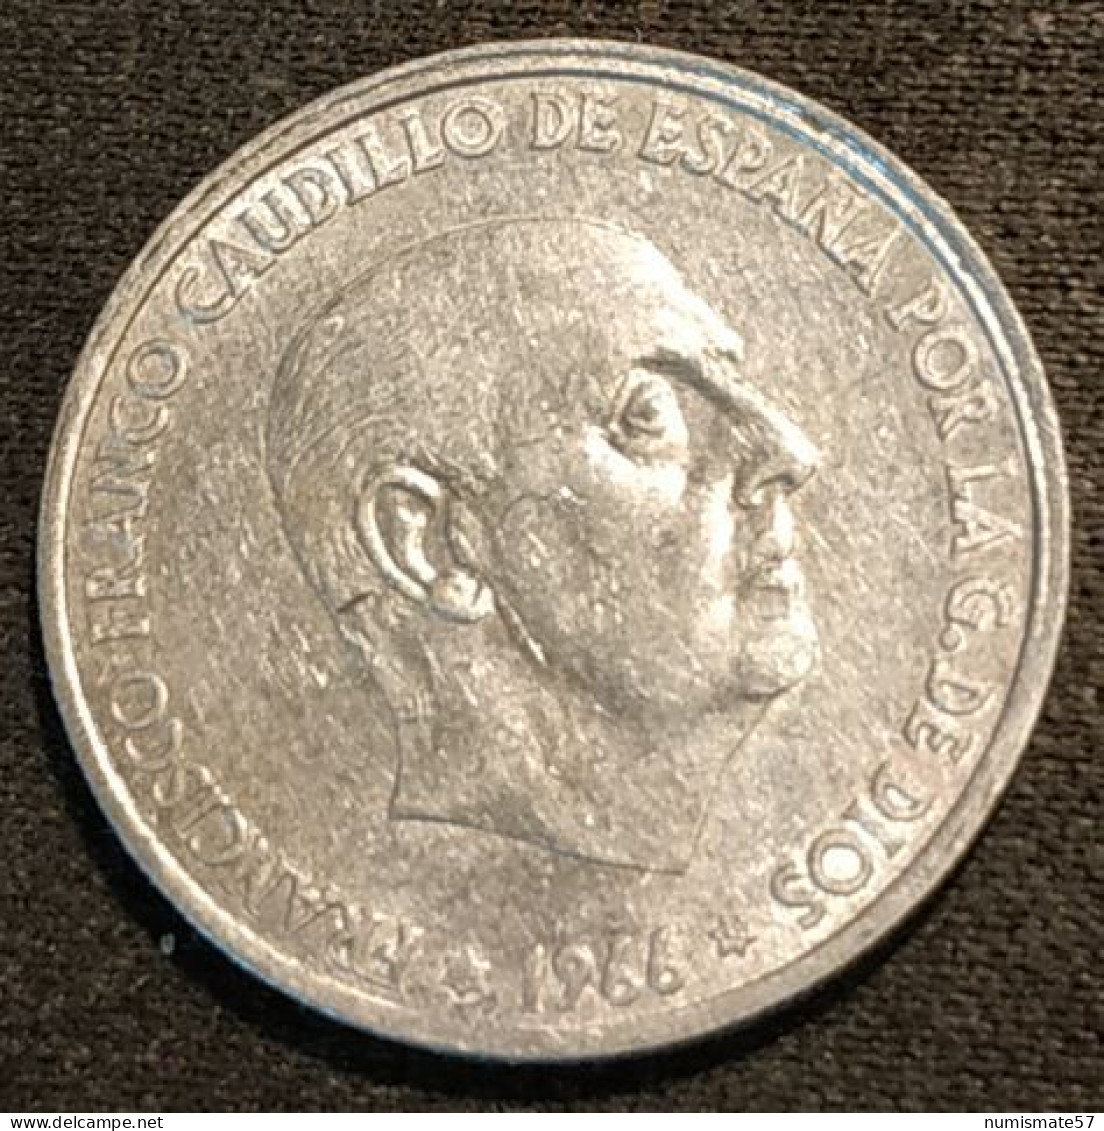 ESPAGNE - ESPANA - SPAIN - 50 CENTIMOS 1966 ( 1968 ) - Franco - KM 795 - 50 Centimos